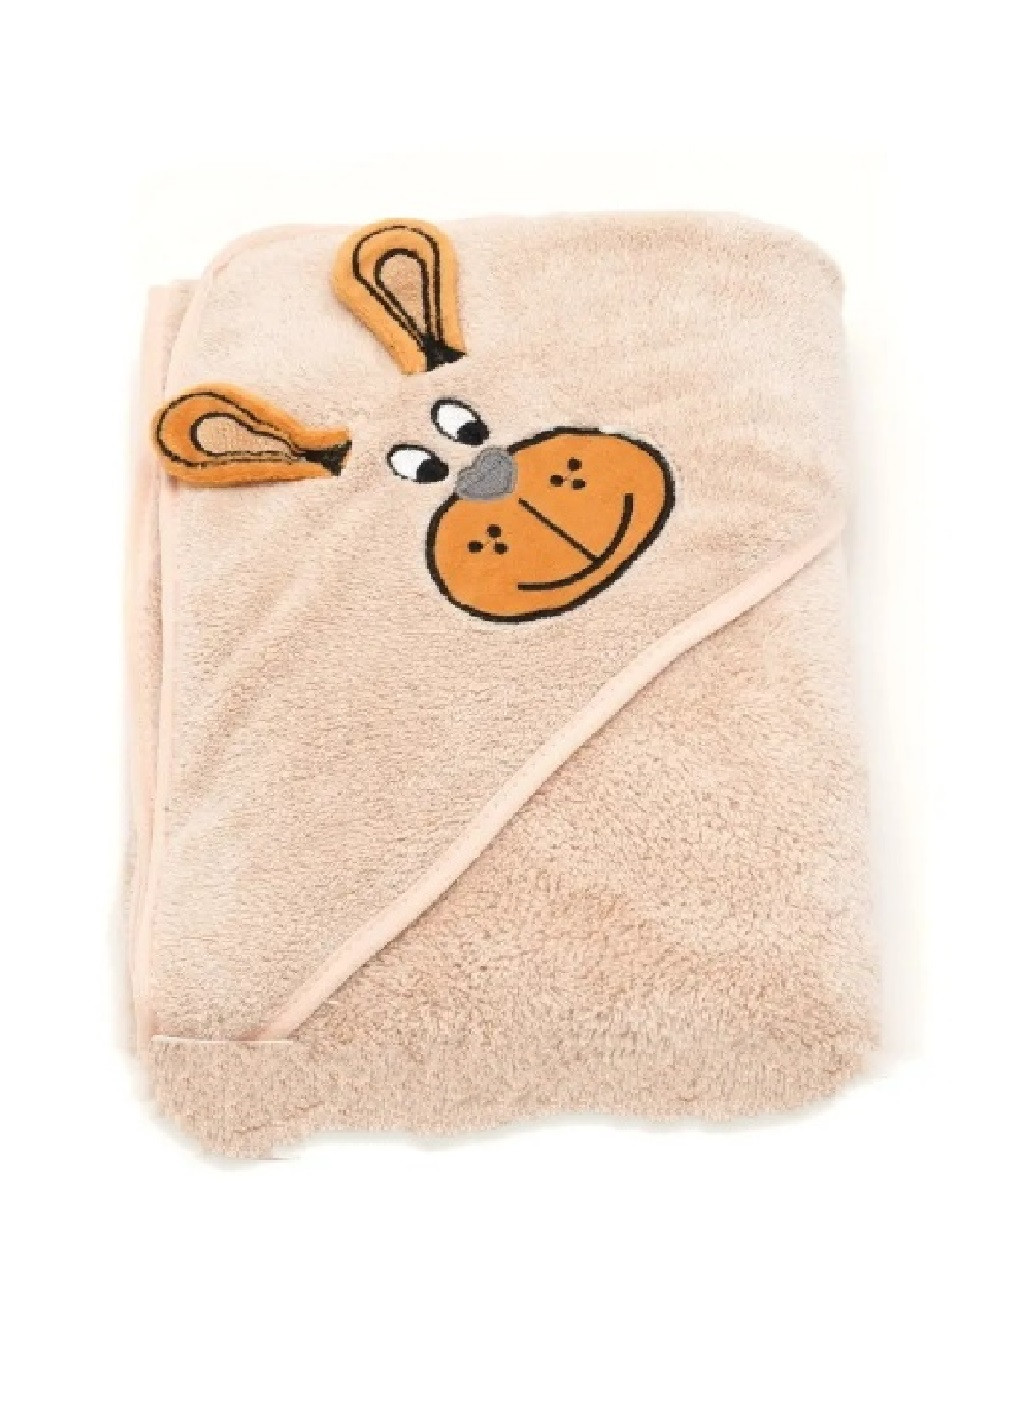 Unbranded полотенце с капюшоном пончо детское банное плед уголок конверт для купания 90х90 см (473225-prob) бежевый однотонный бежевый производство -